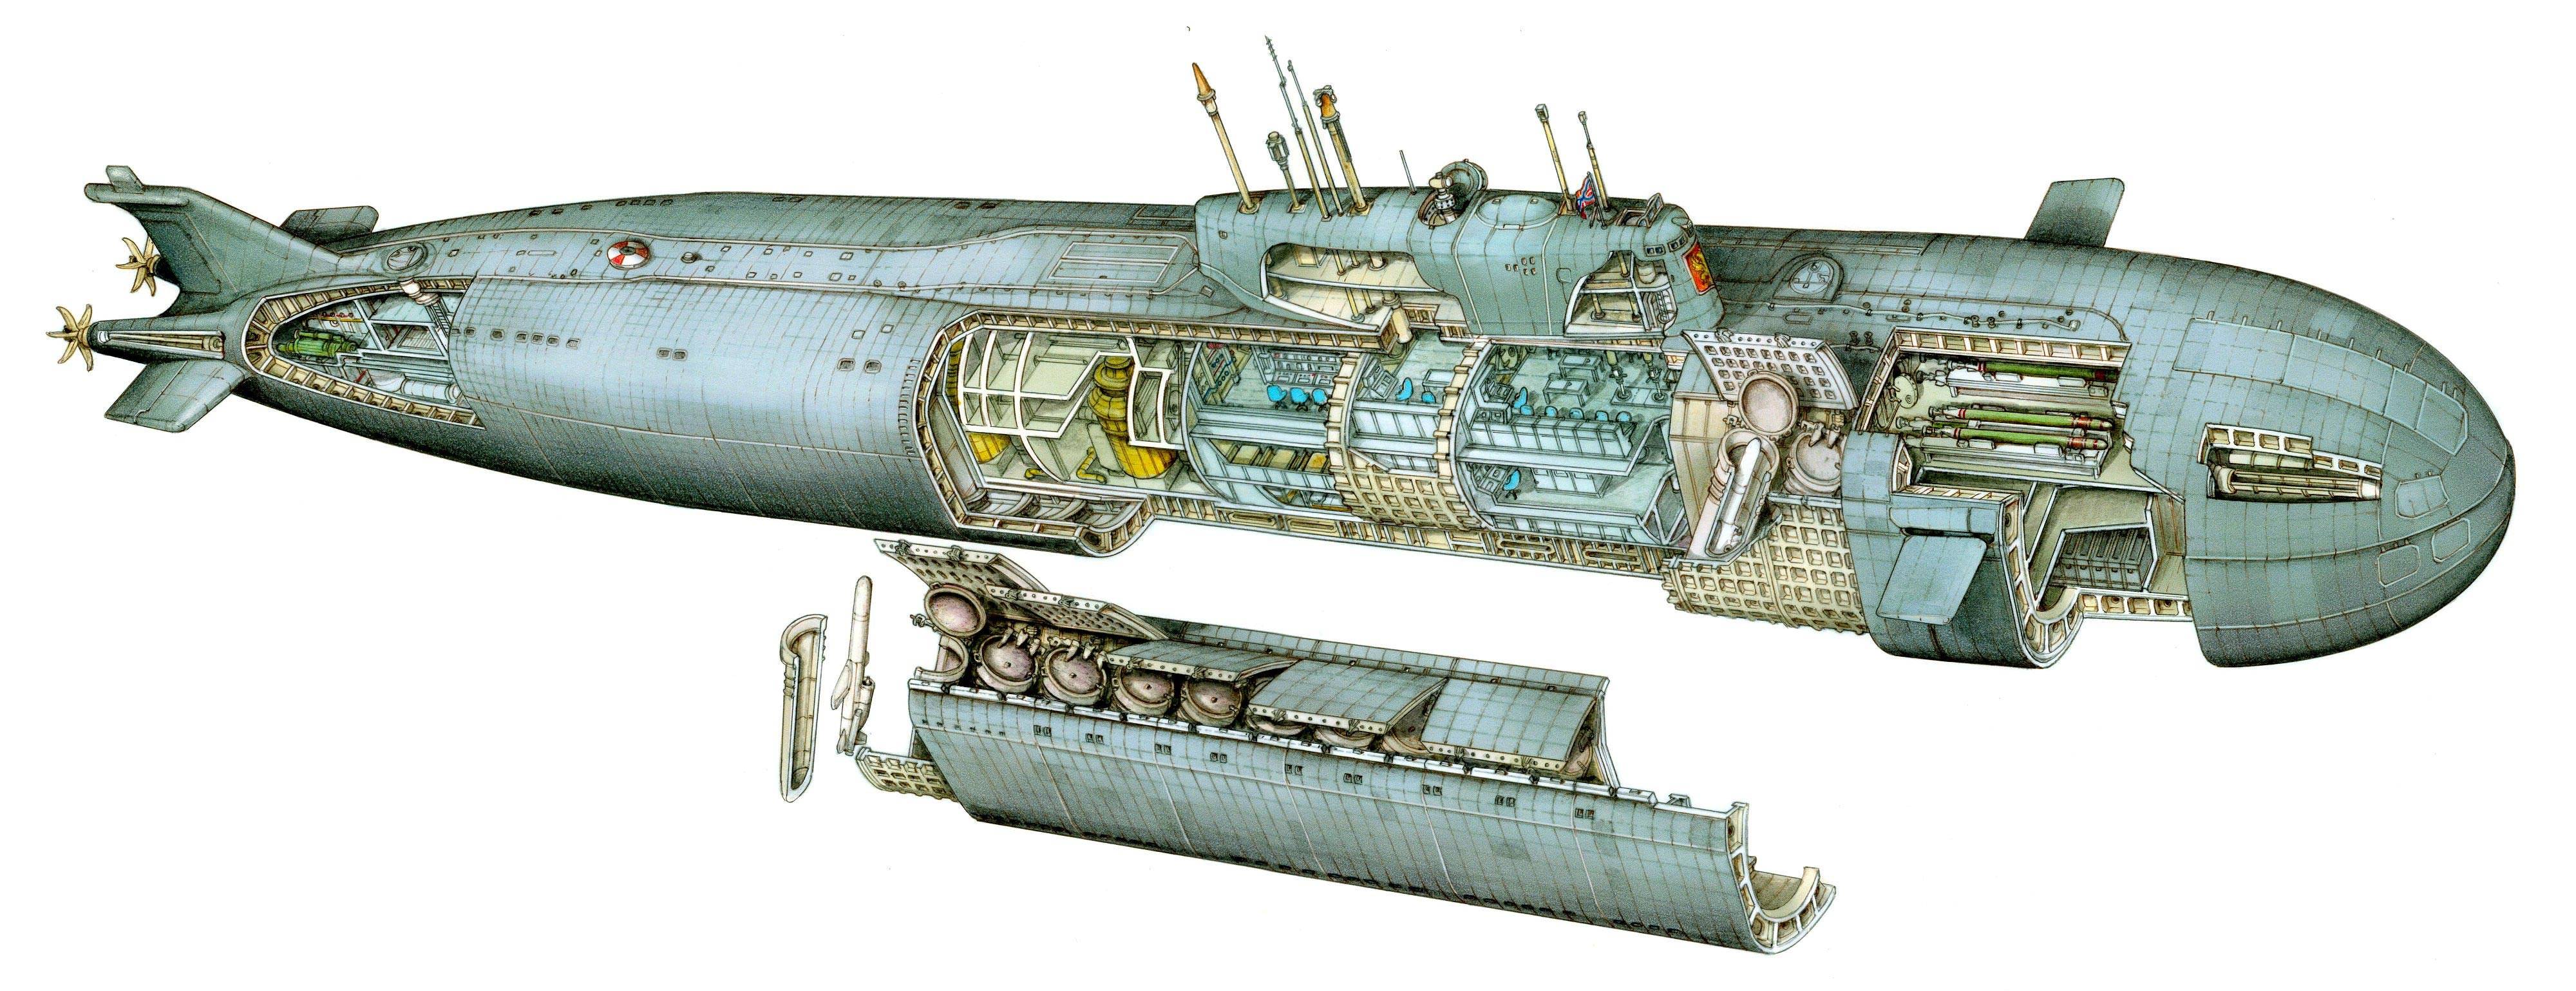 库尔斯克号核潜艇内部结构图